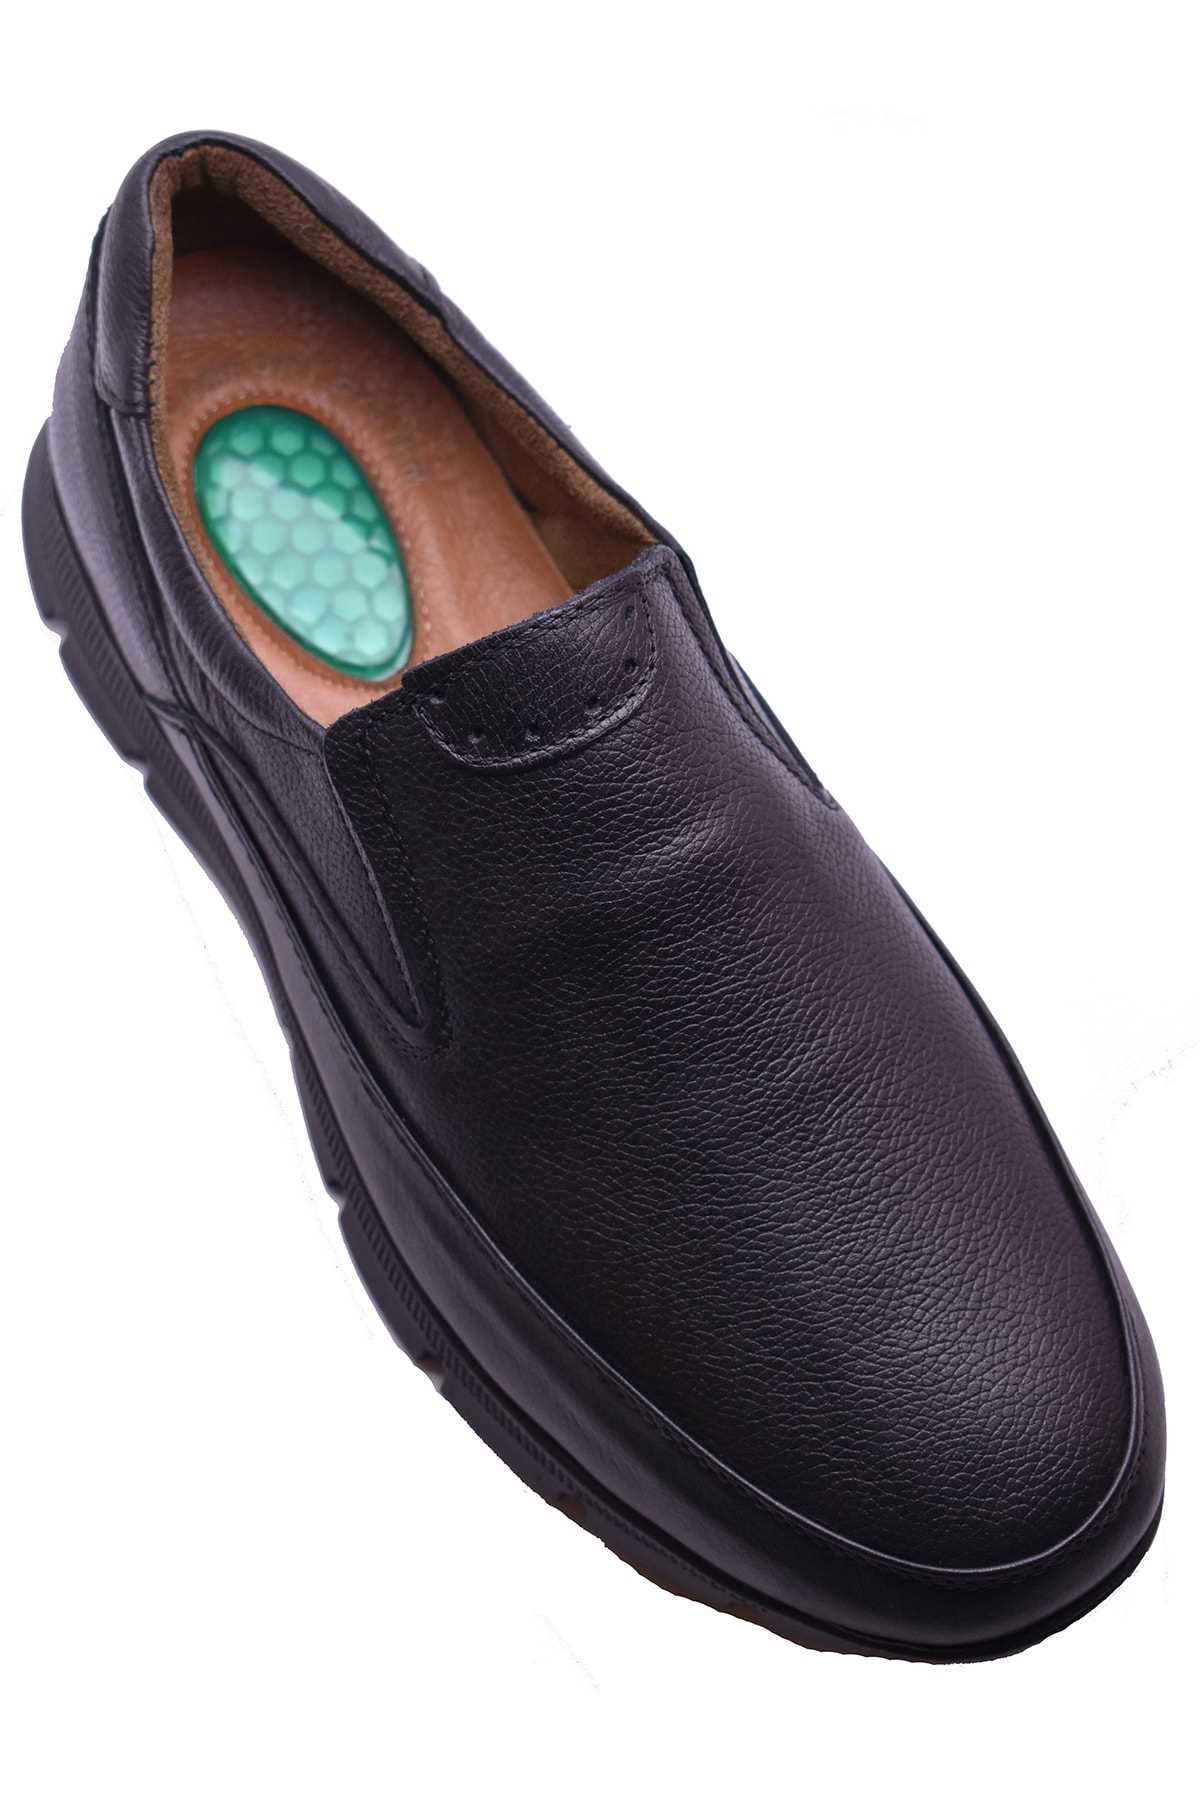 خرید انلاین کفش کلاسیک مردانه خاص برند ULUSOY رنگ مشکی کد ty48162055